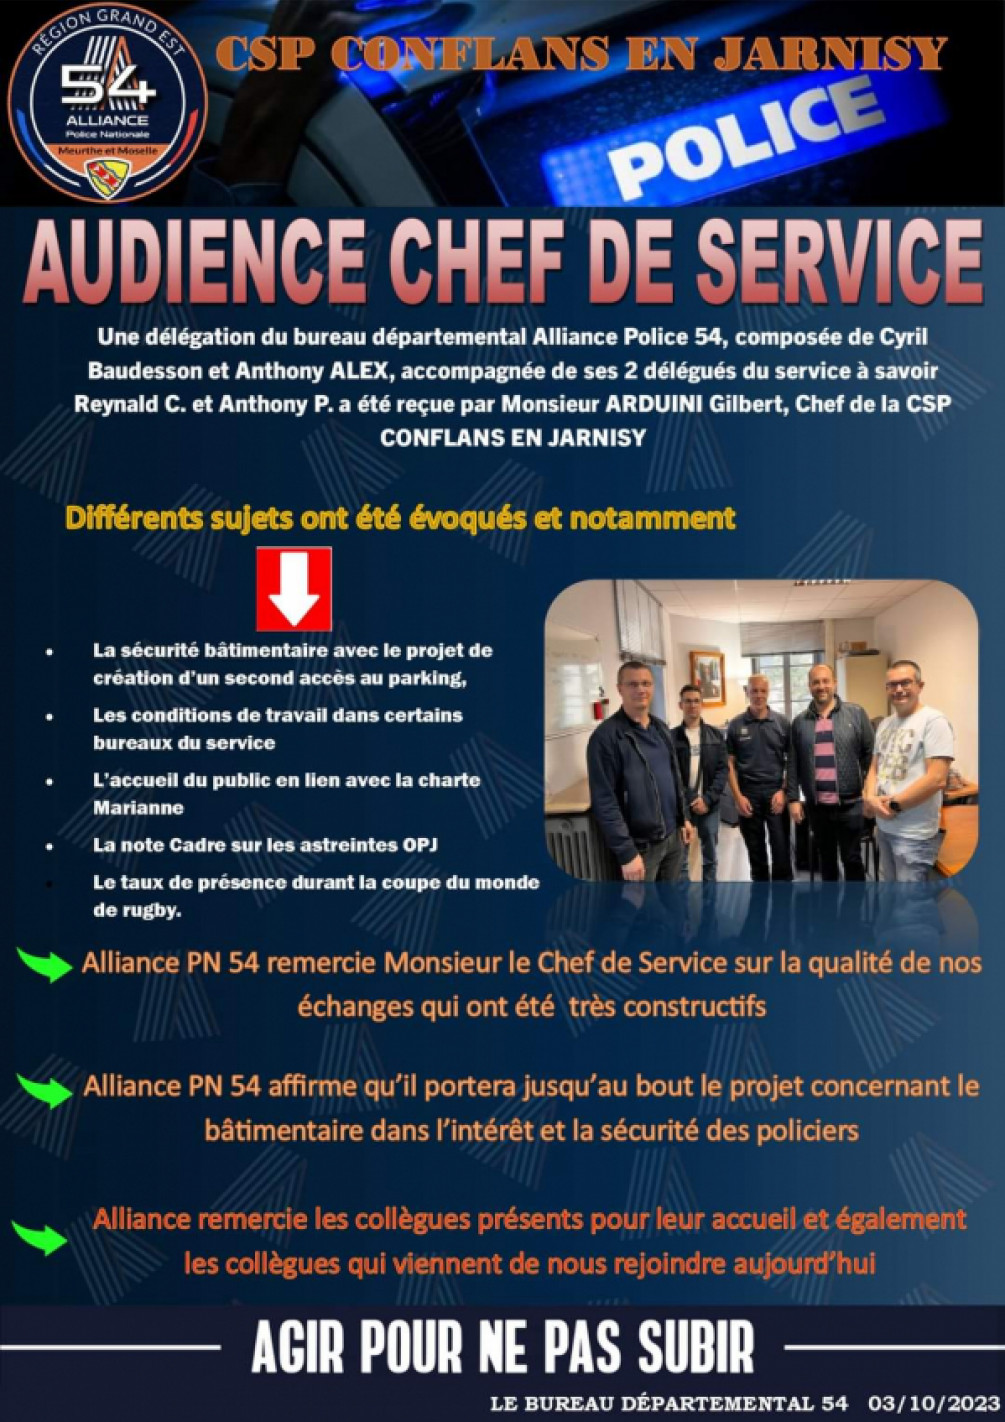 Csp Conflans-en-Jarnisy audience chef de service